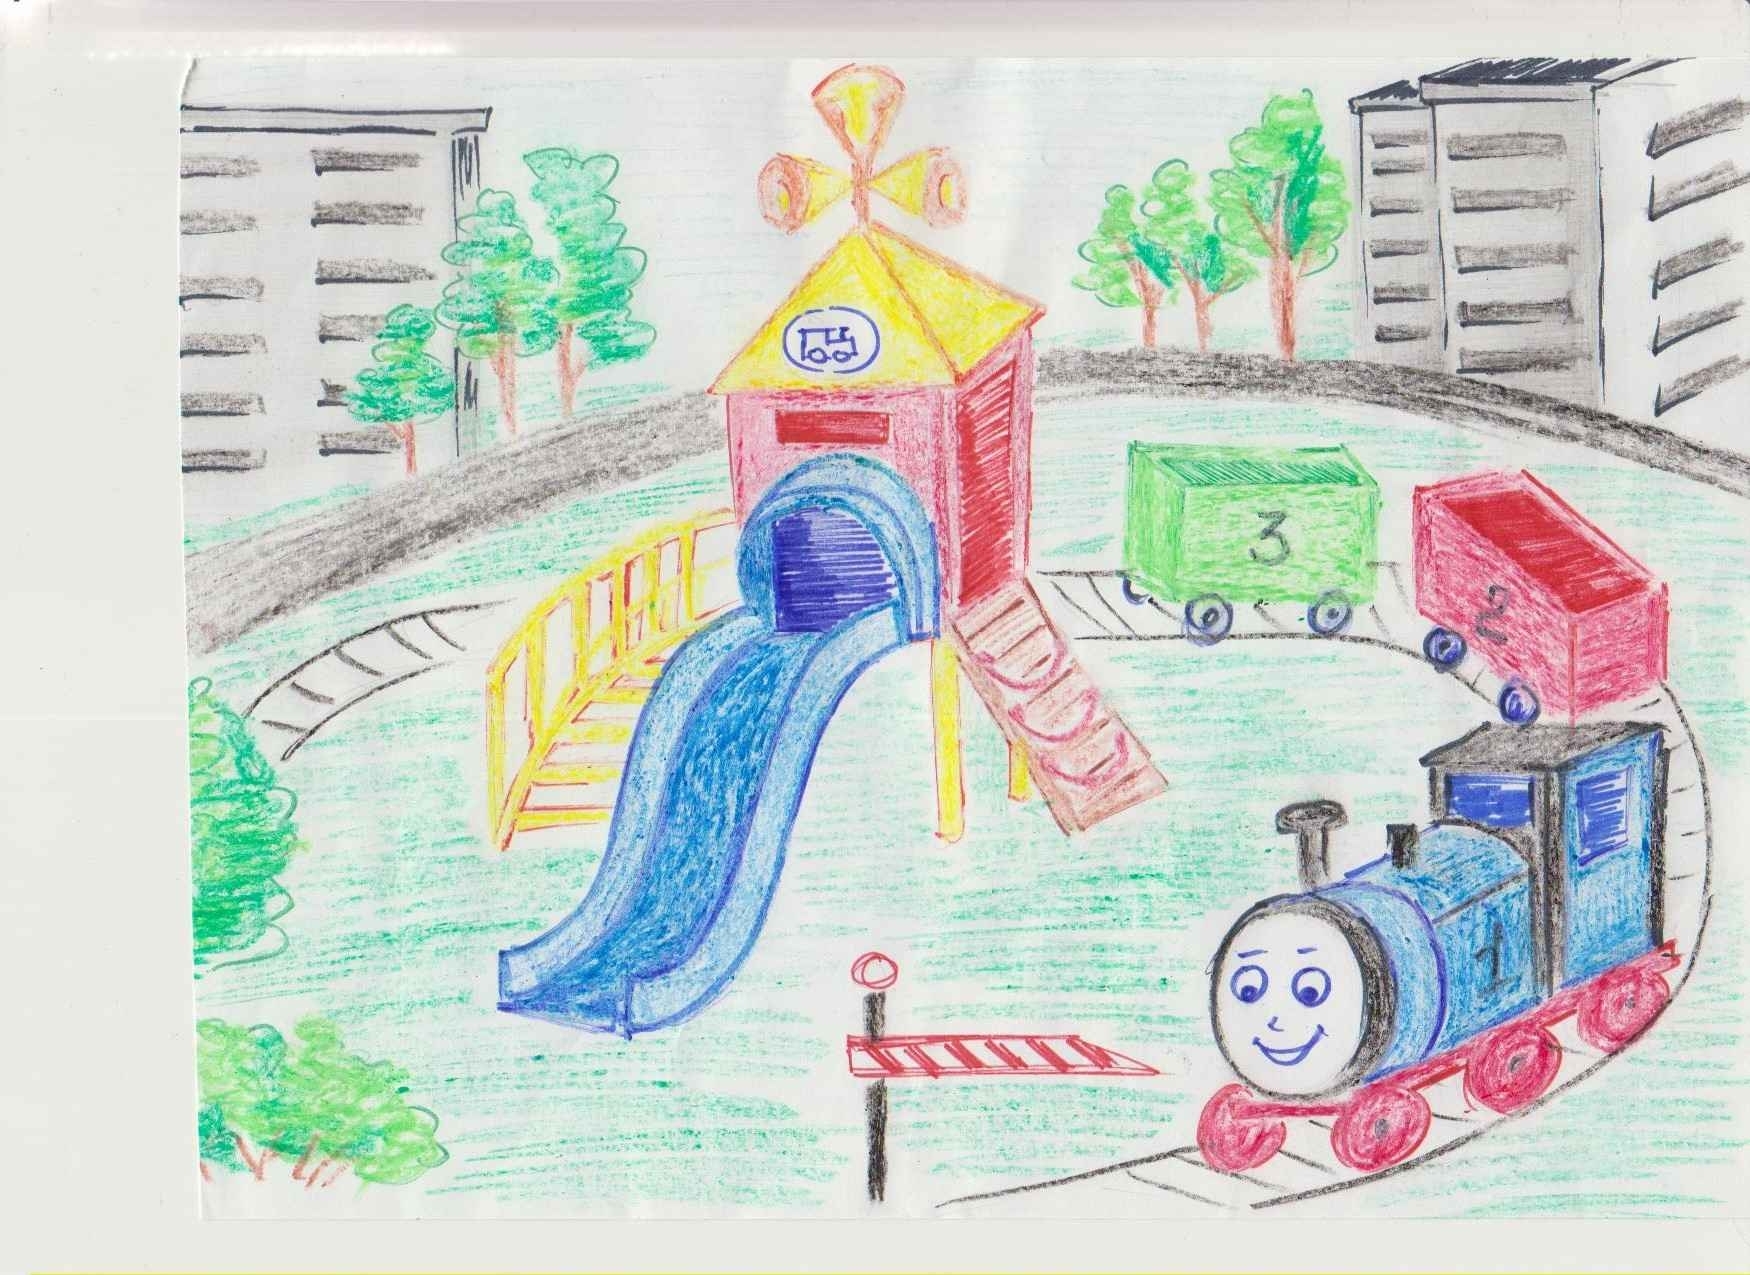 Детская железная дорога рисунок 1 класс